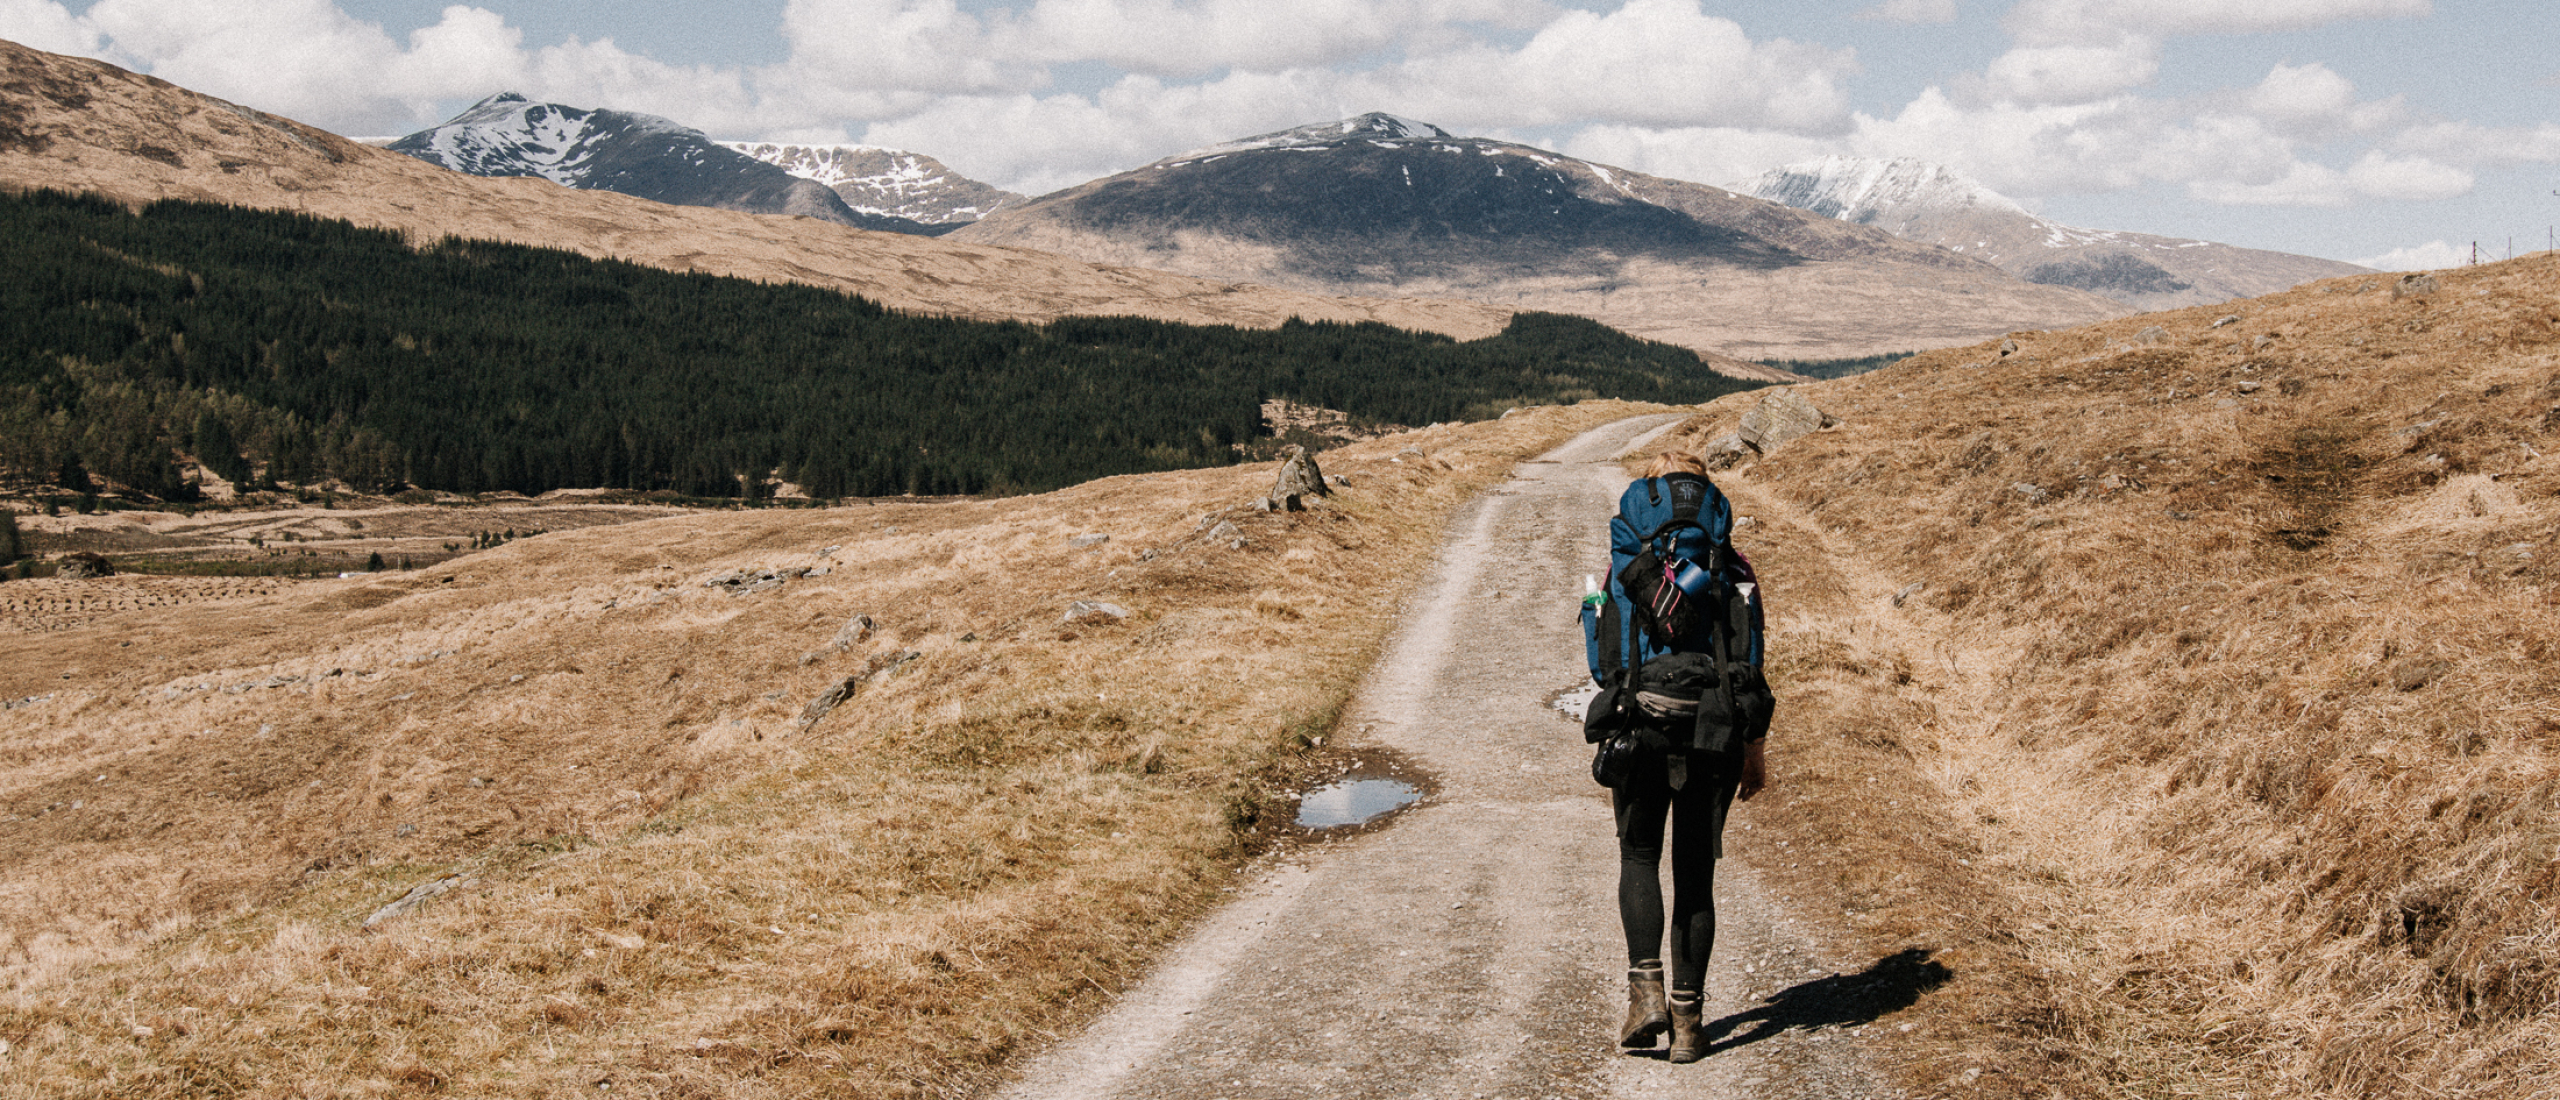 De West Highland Way: 154 km wandelen door de Schotse Hooglanden